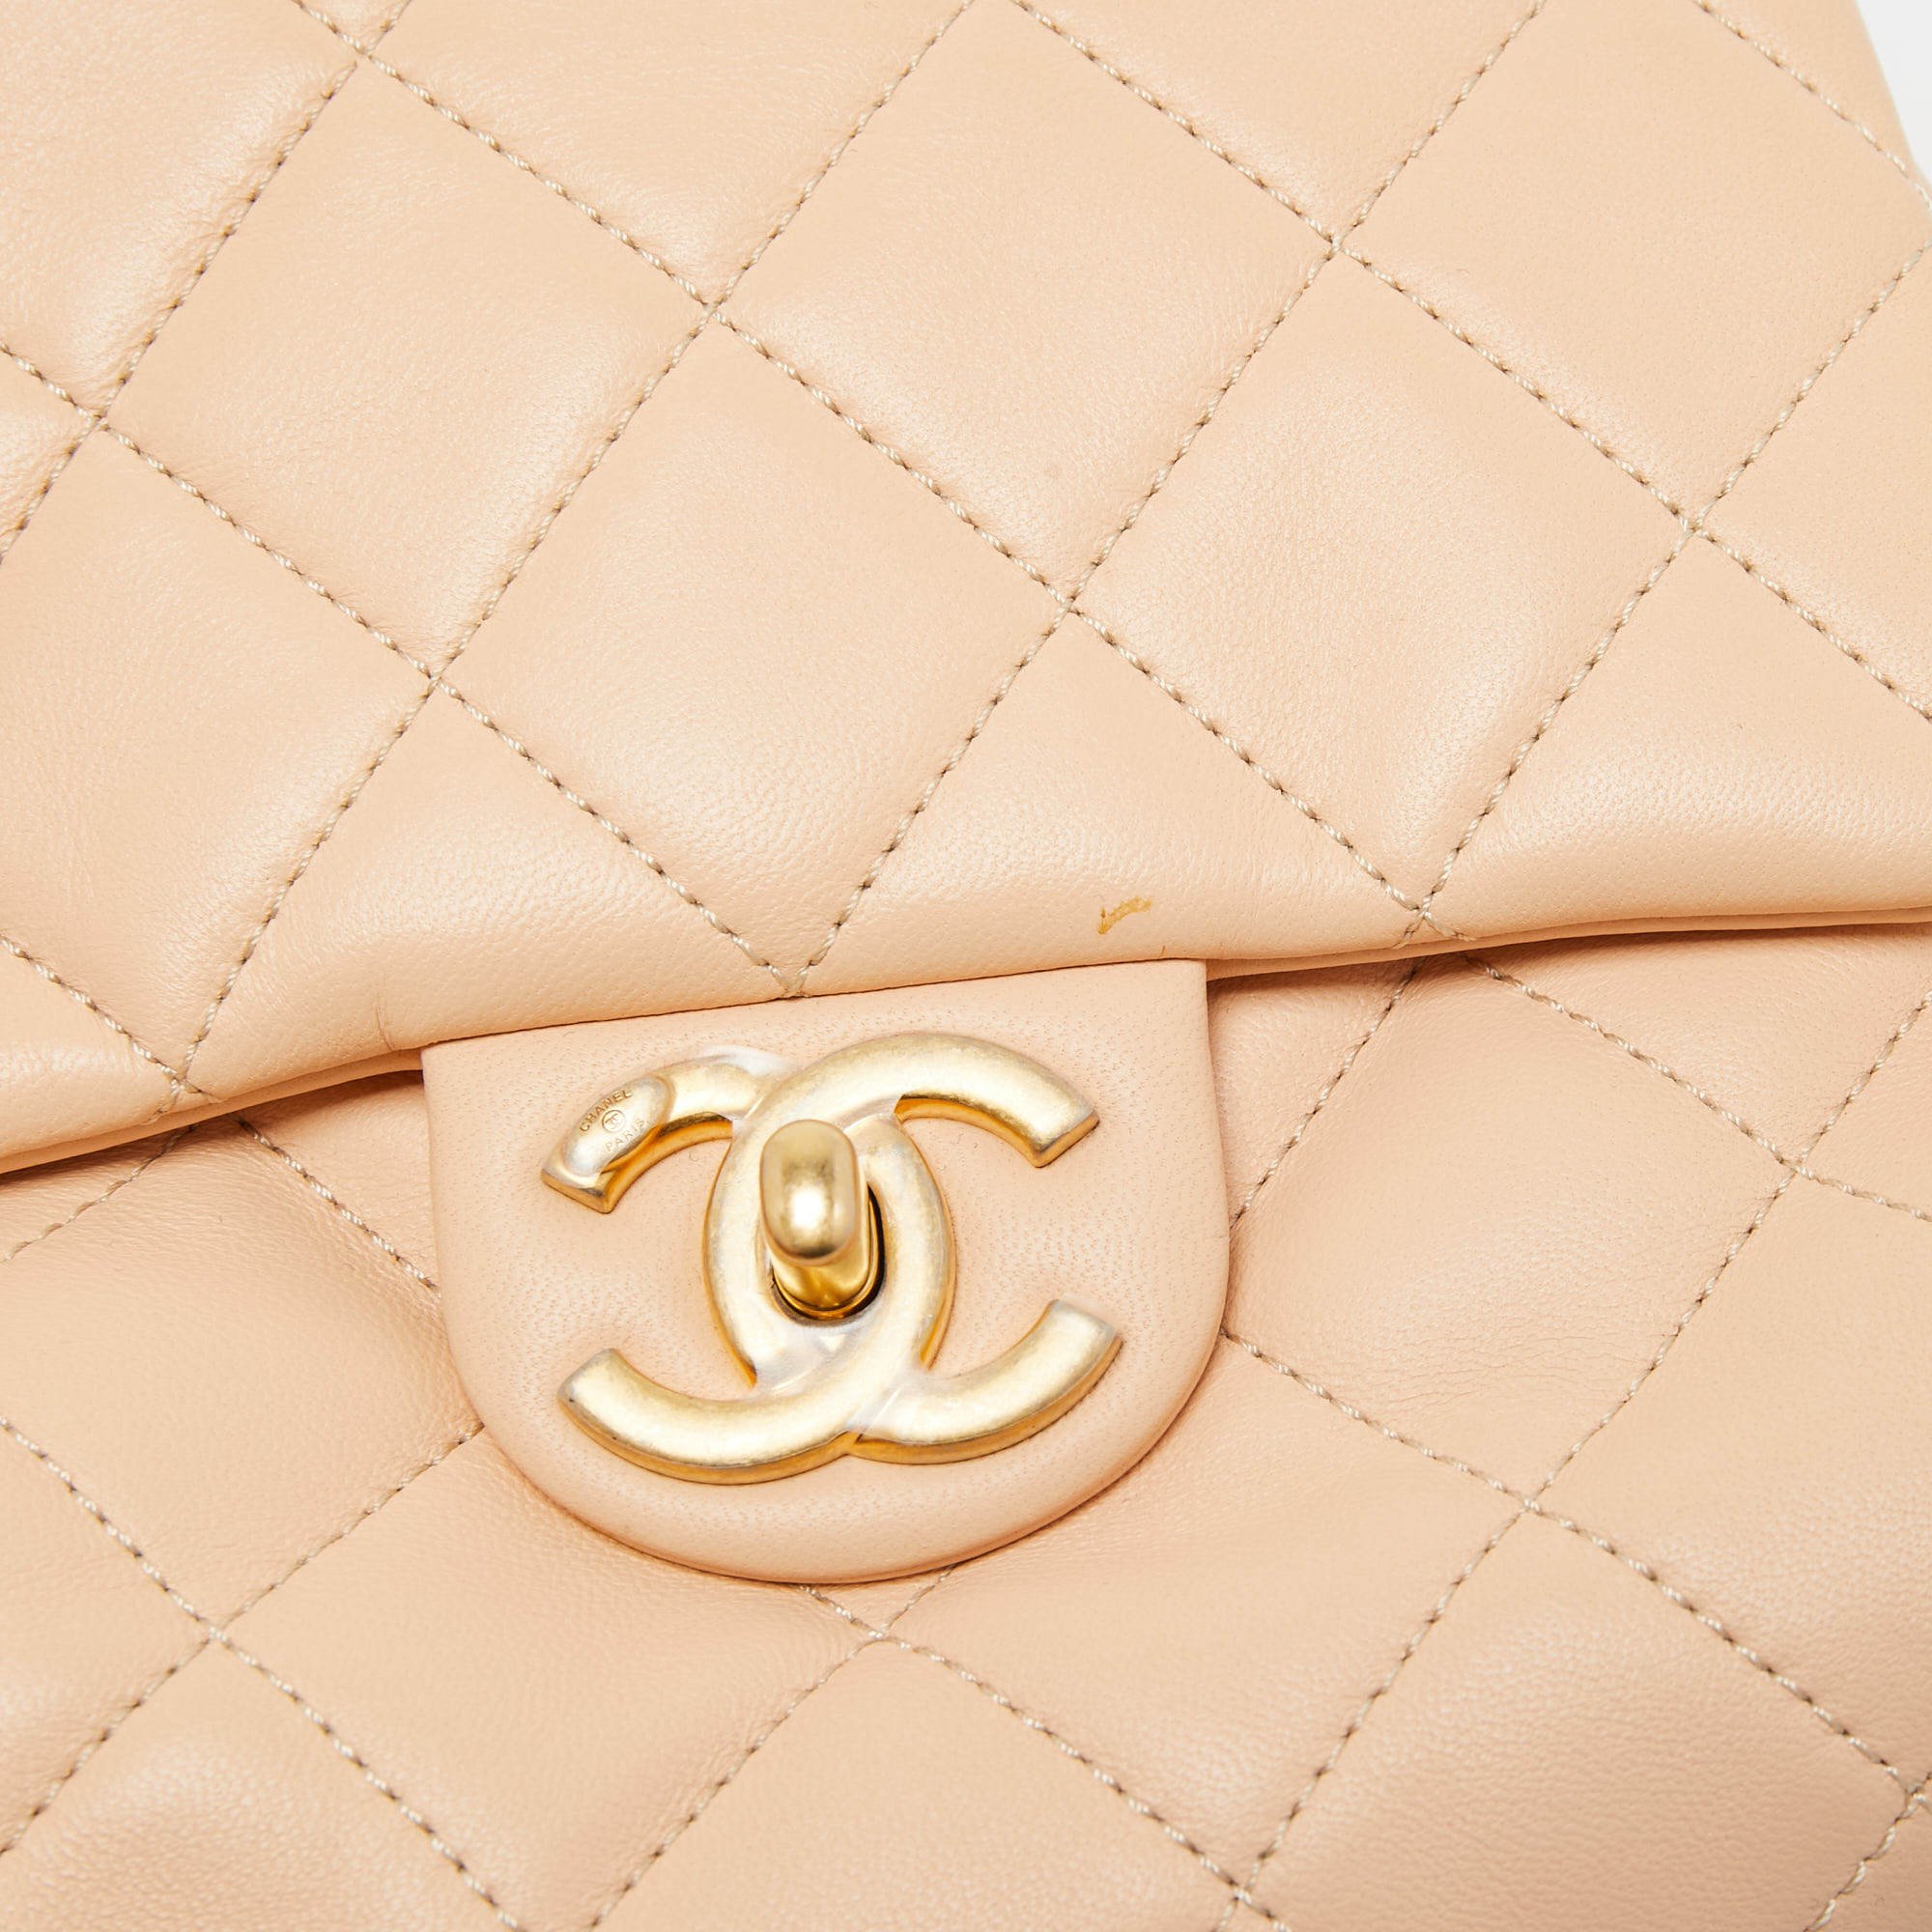 Chanel Beige Quilted Leather Side Packs Shoulder Bag